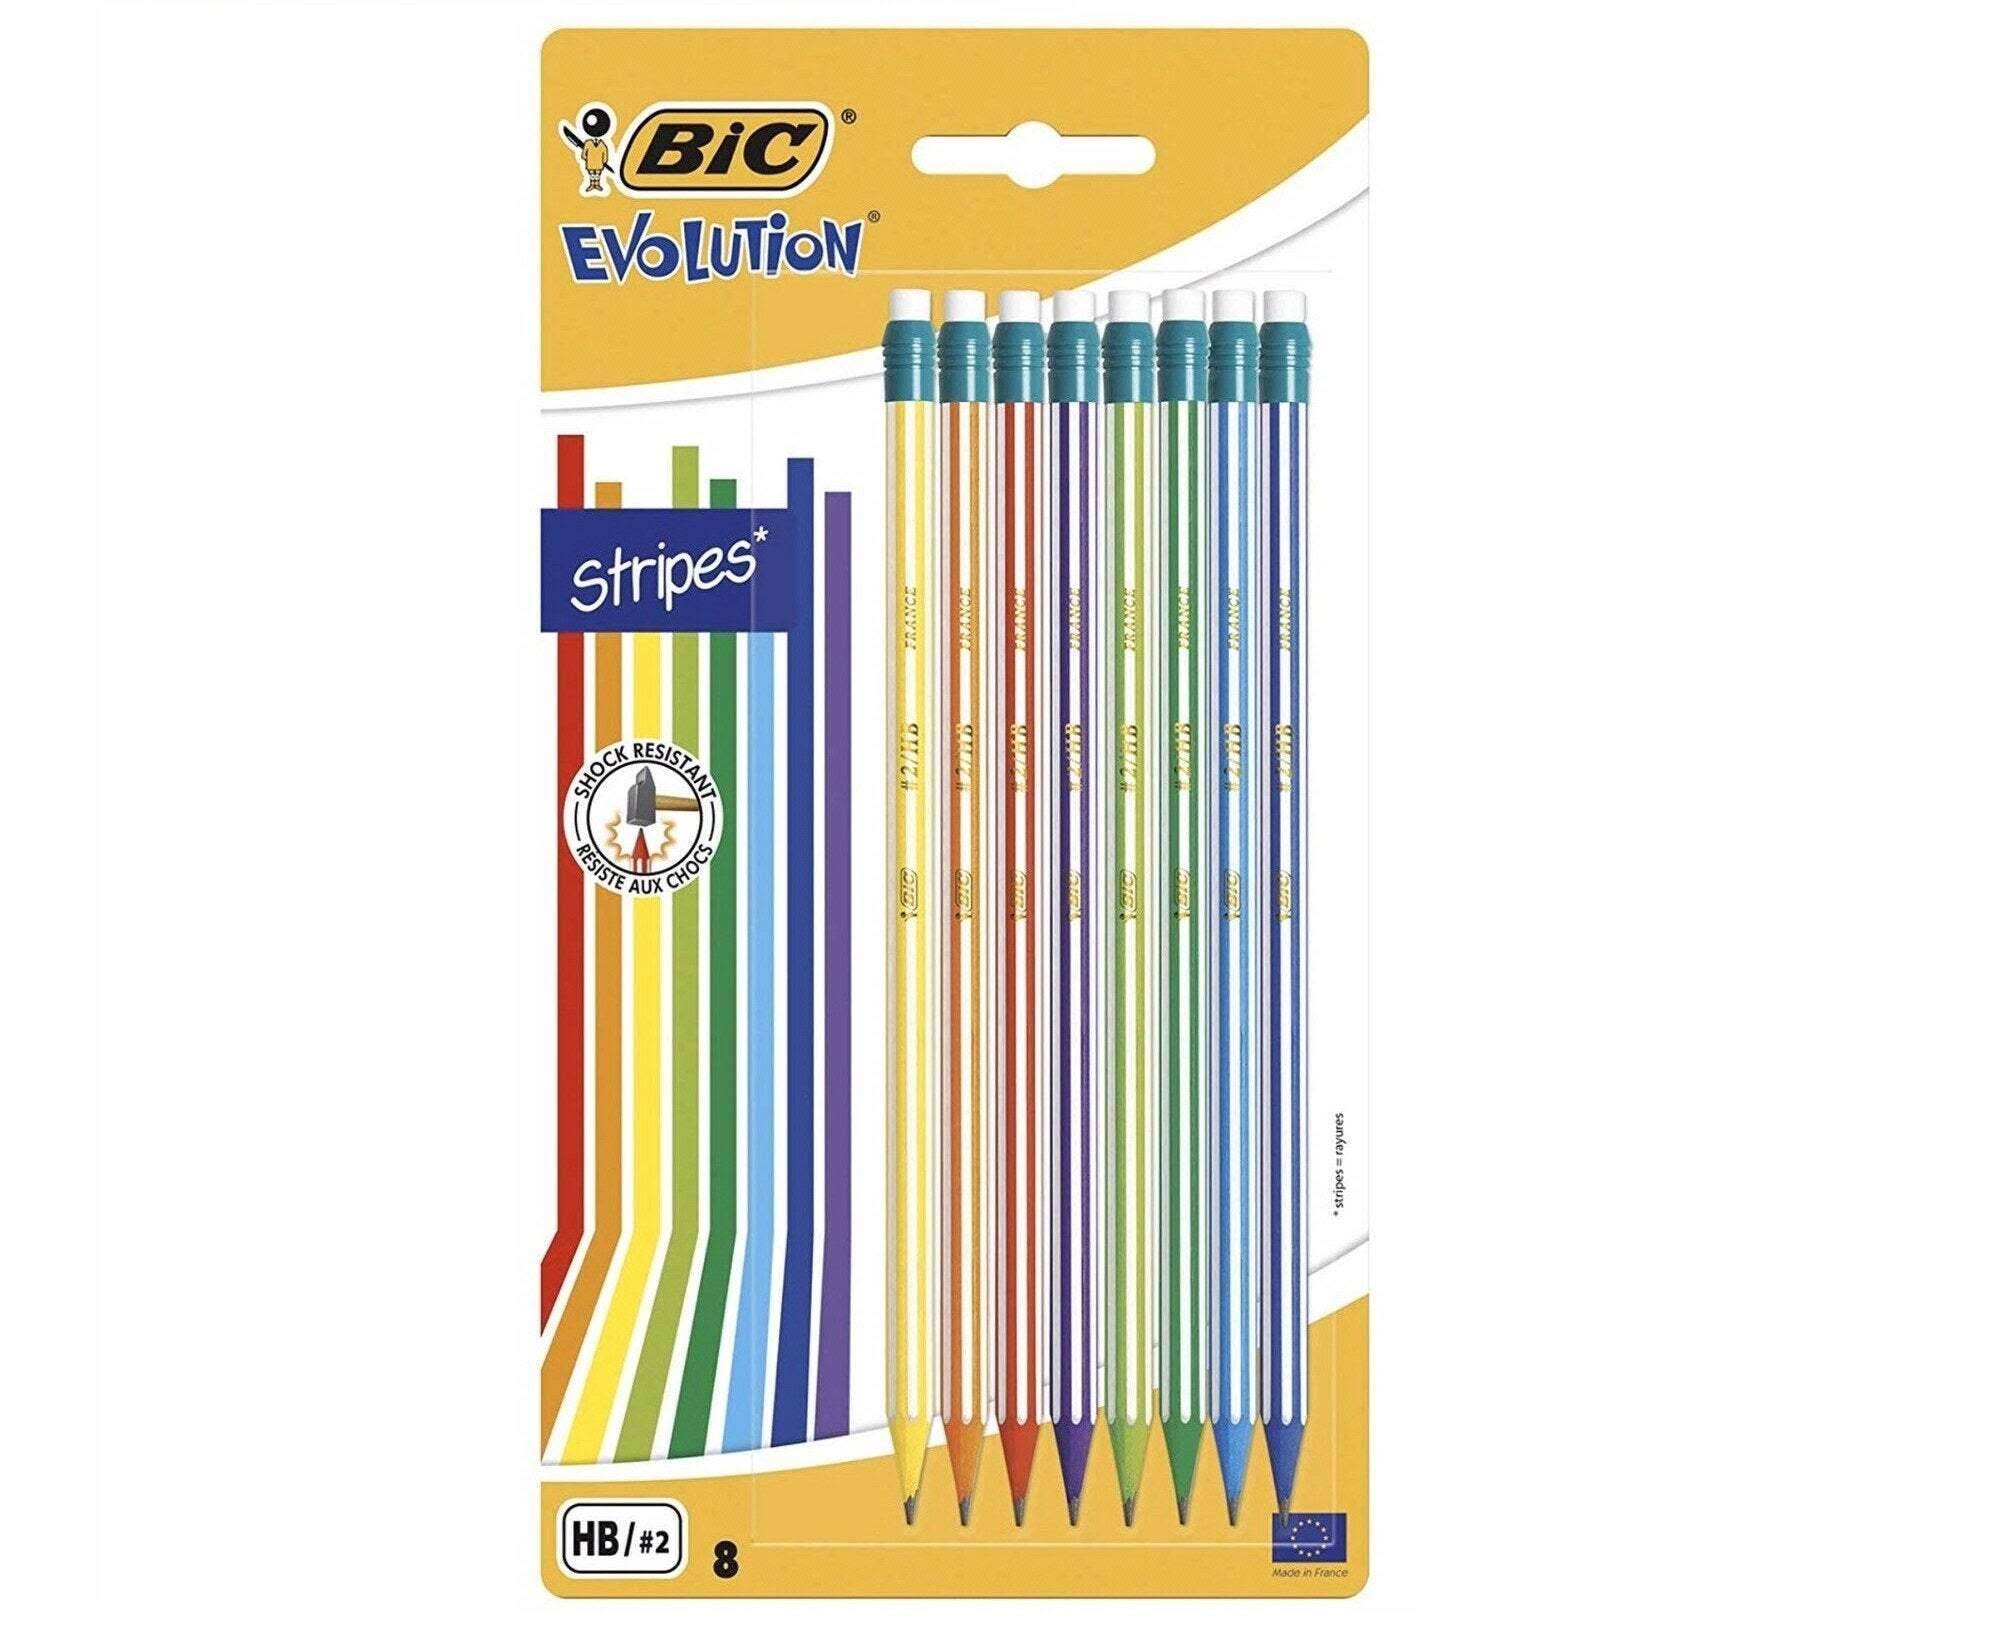 Bic Evolution Stripes with Eraser Pack of 8